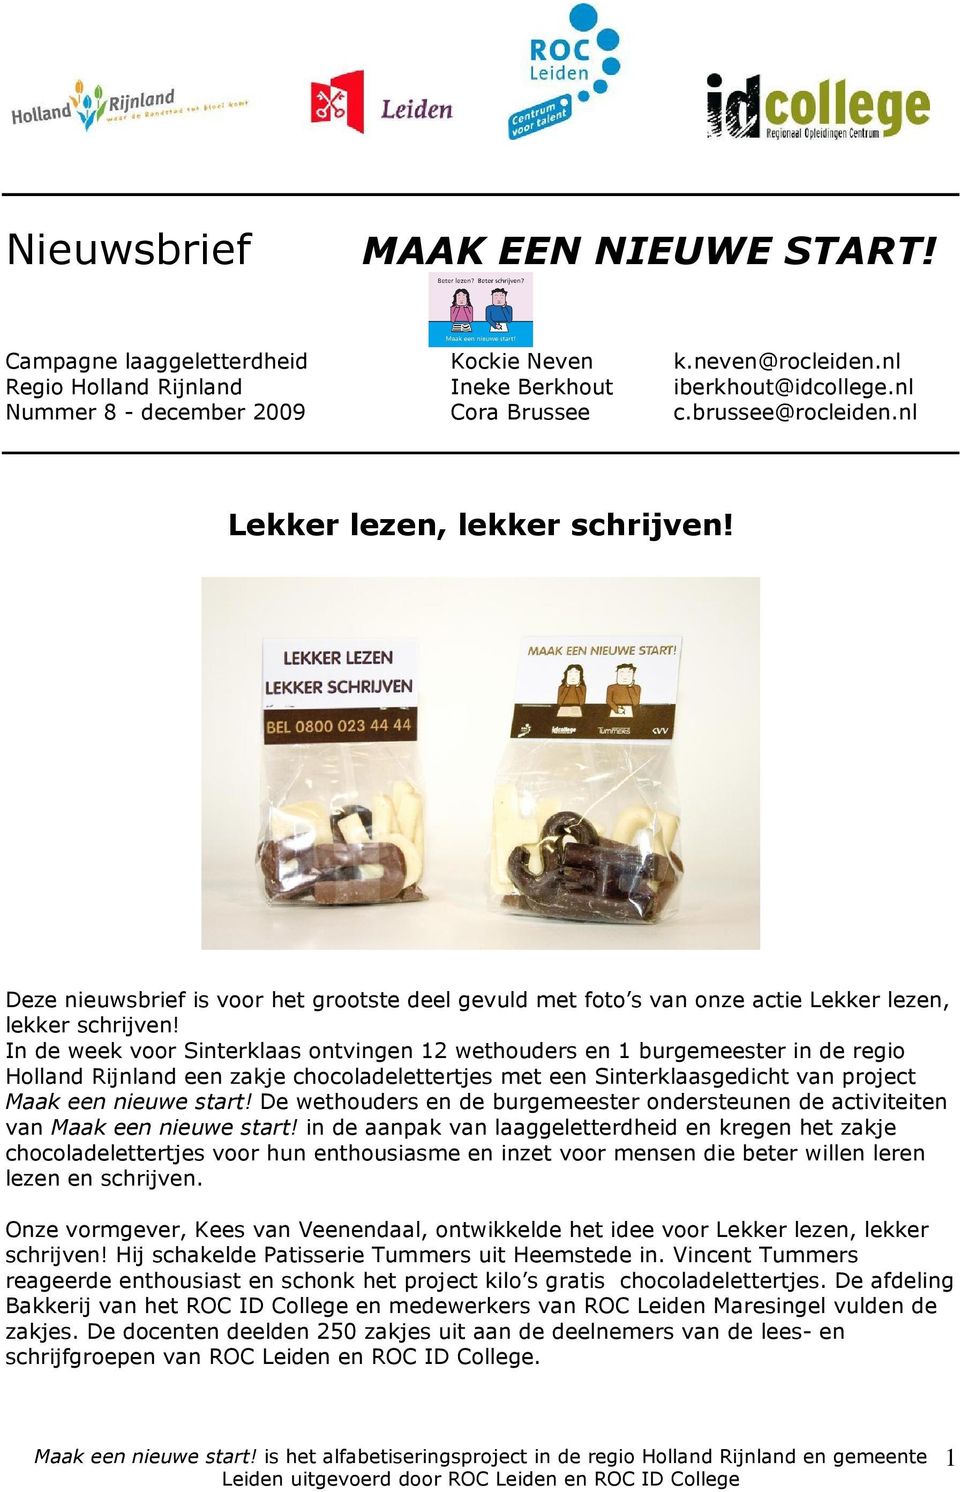 In de week voor Sinterklaas ontvingen 12 wethouders en 1 burgemeester in de regio Holland Rijnland een zakje chocoladelettertjes met een Sinterklaasgedicht van project Maak een nieuwe start!